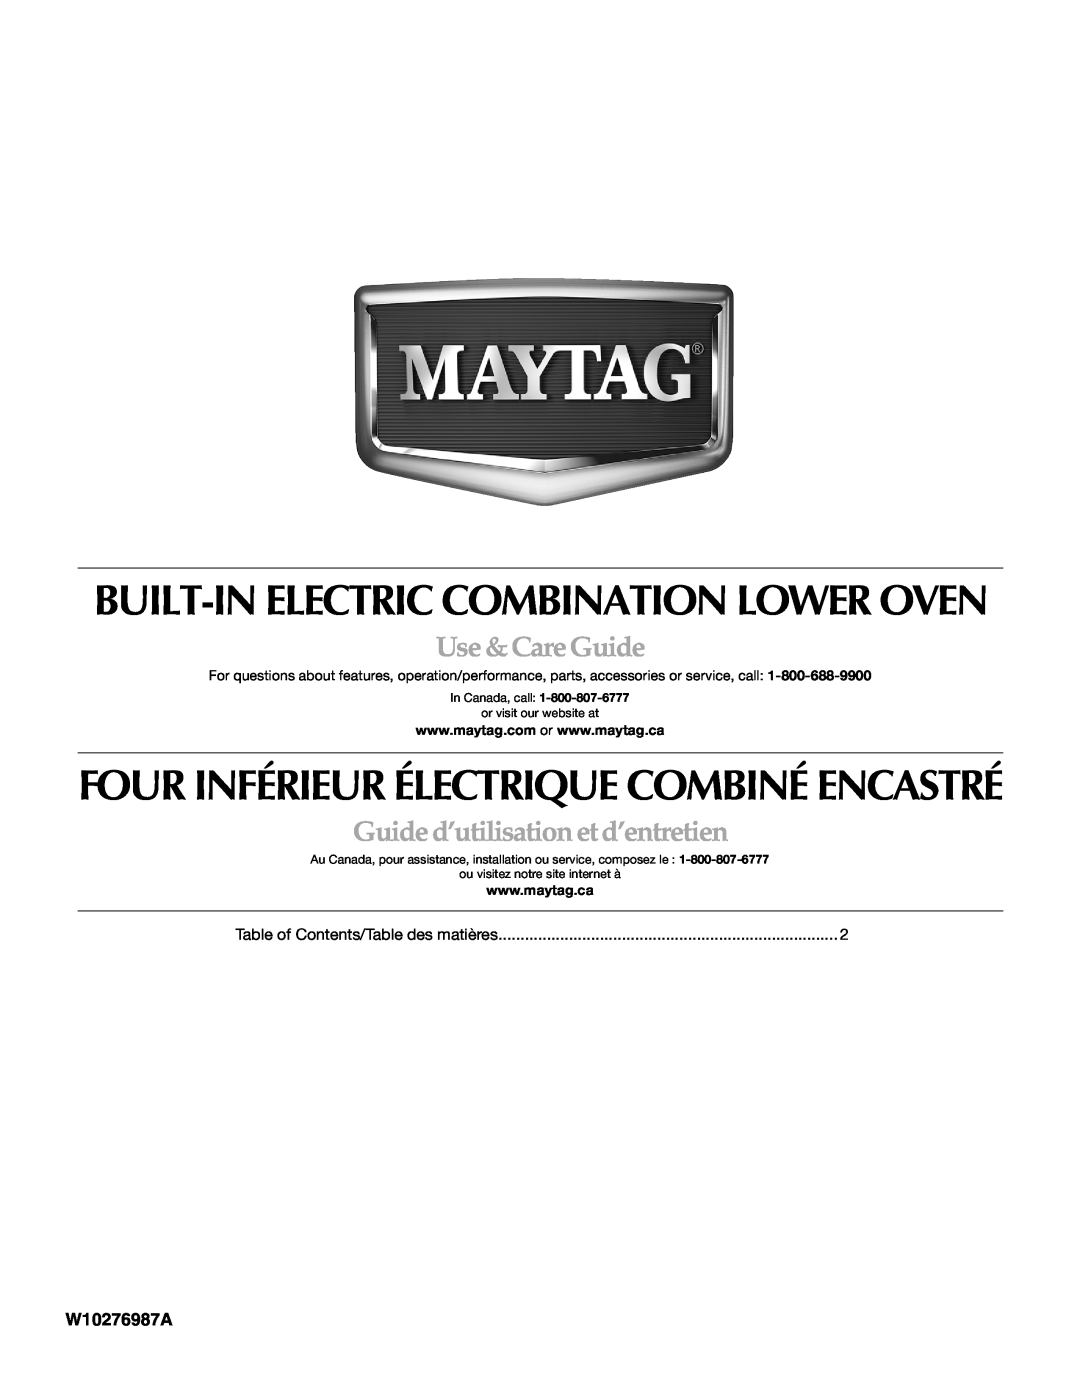 Maytag MMW7530WDS manual Built-In Electric Combination Lower Oven, Four Inférieur Électrique Combiné Encastré, W10276987A 